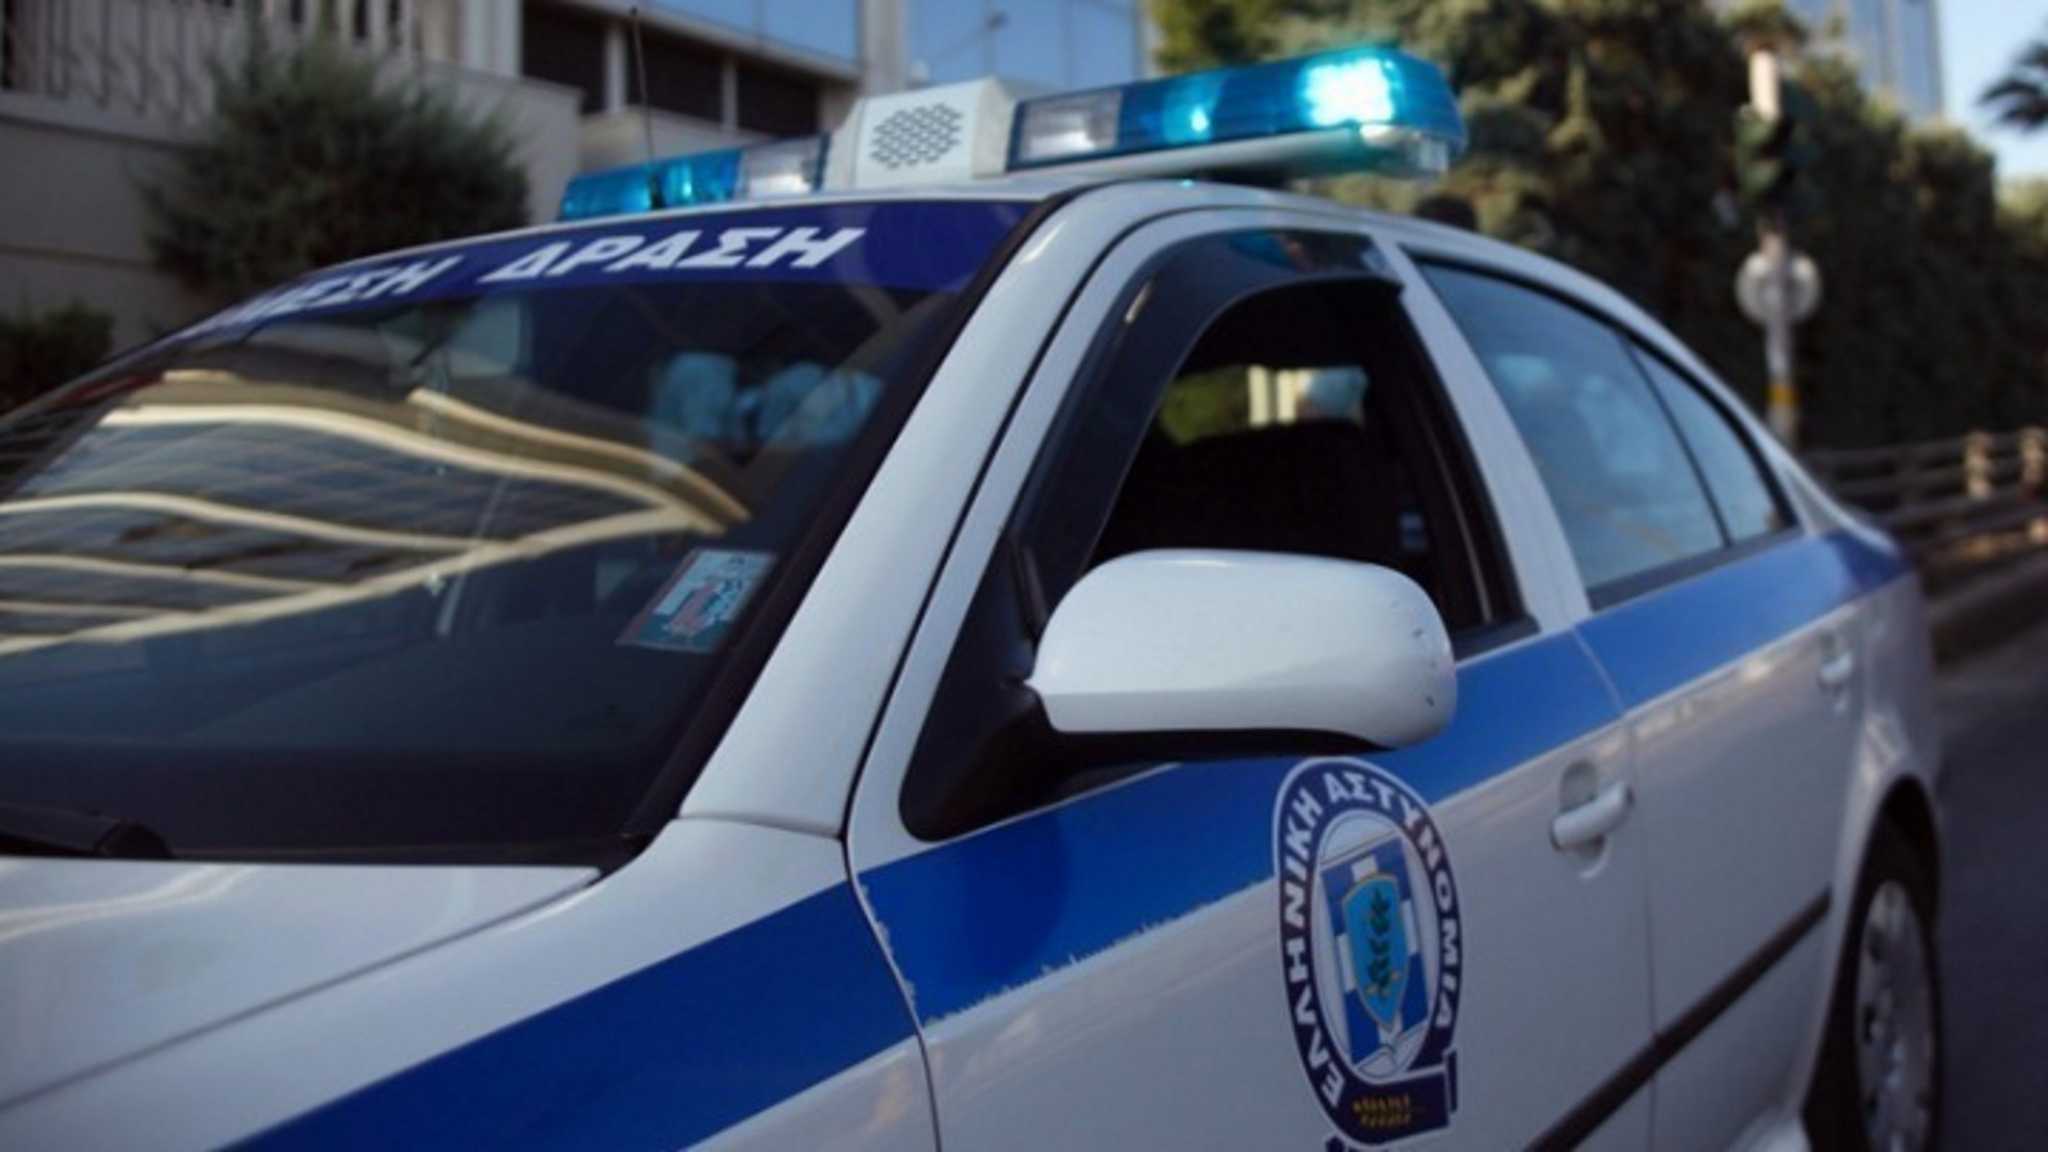 Θεσσαλονίκη: Πατέρας κοιμήθηκε στο αμάξι του και τα ανήλικα παιδιά του κυκλοφορούσαν μόνα τους στο κέντρο